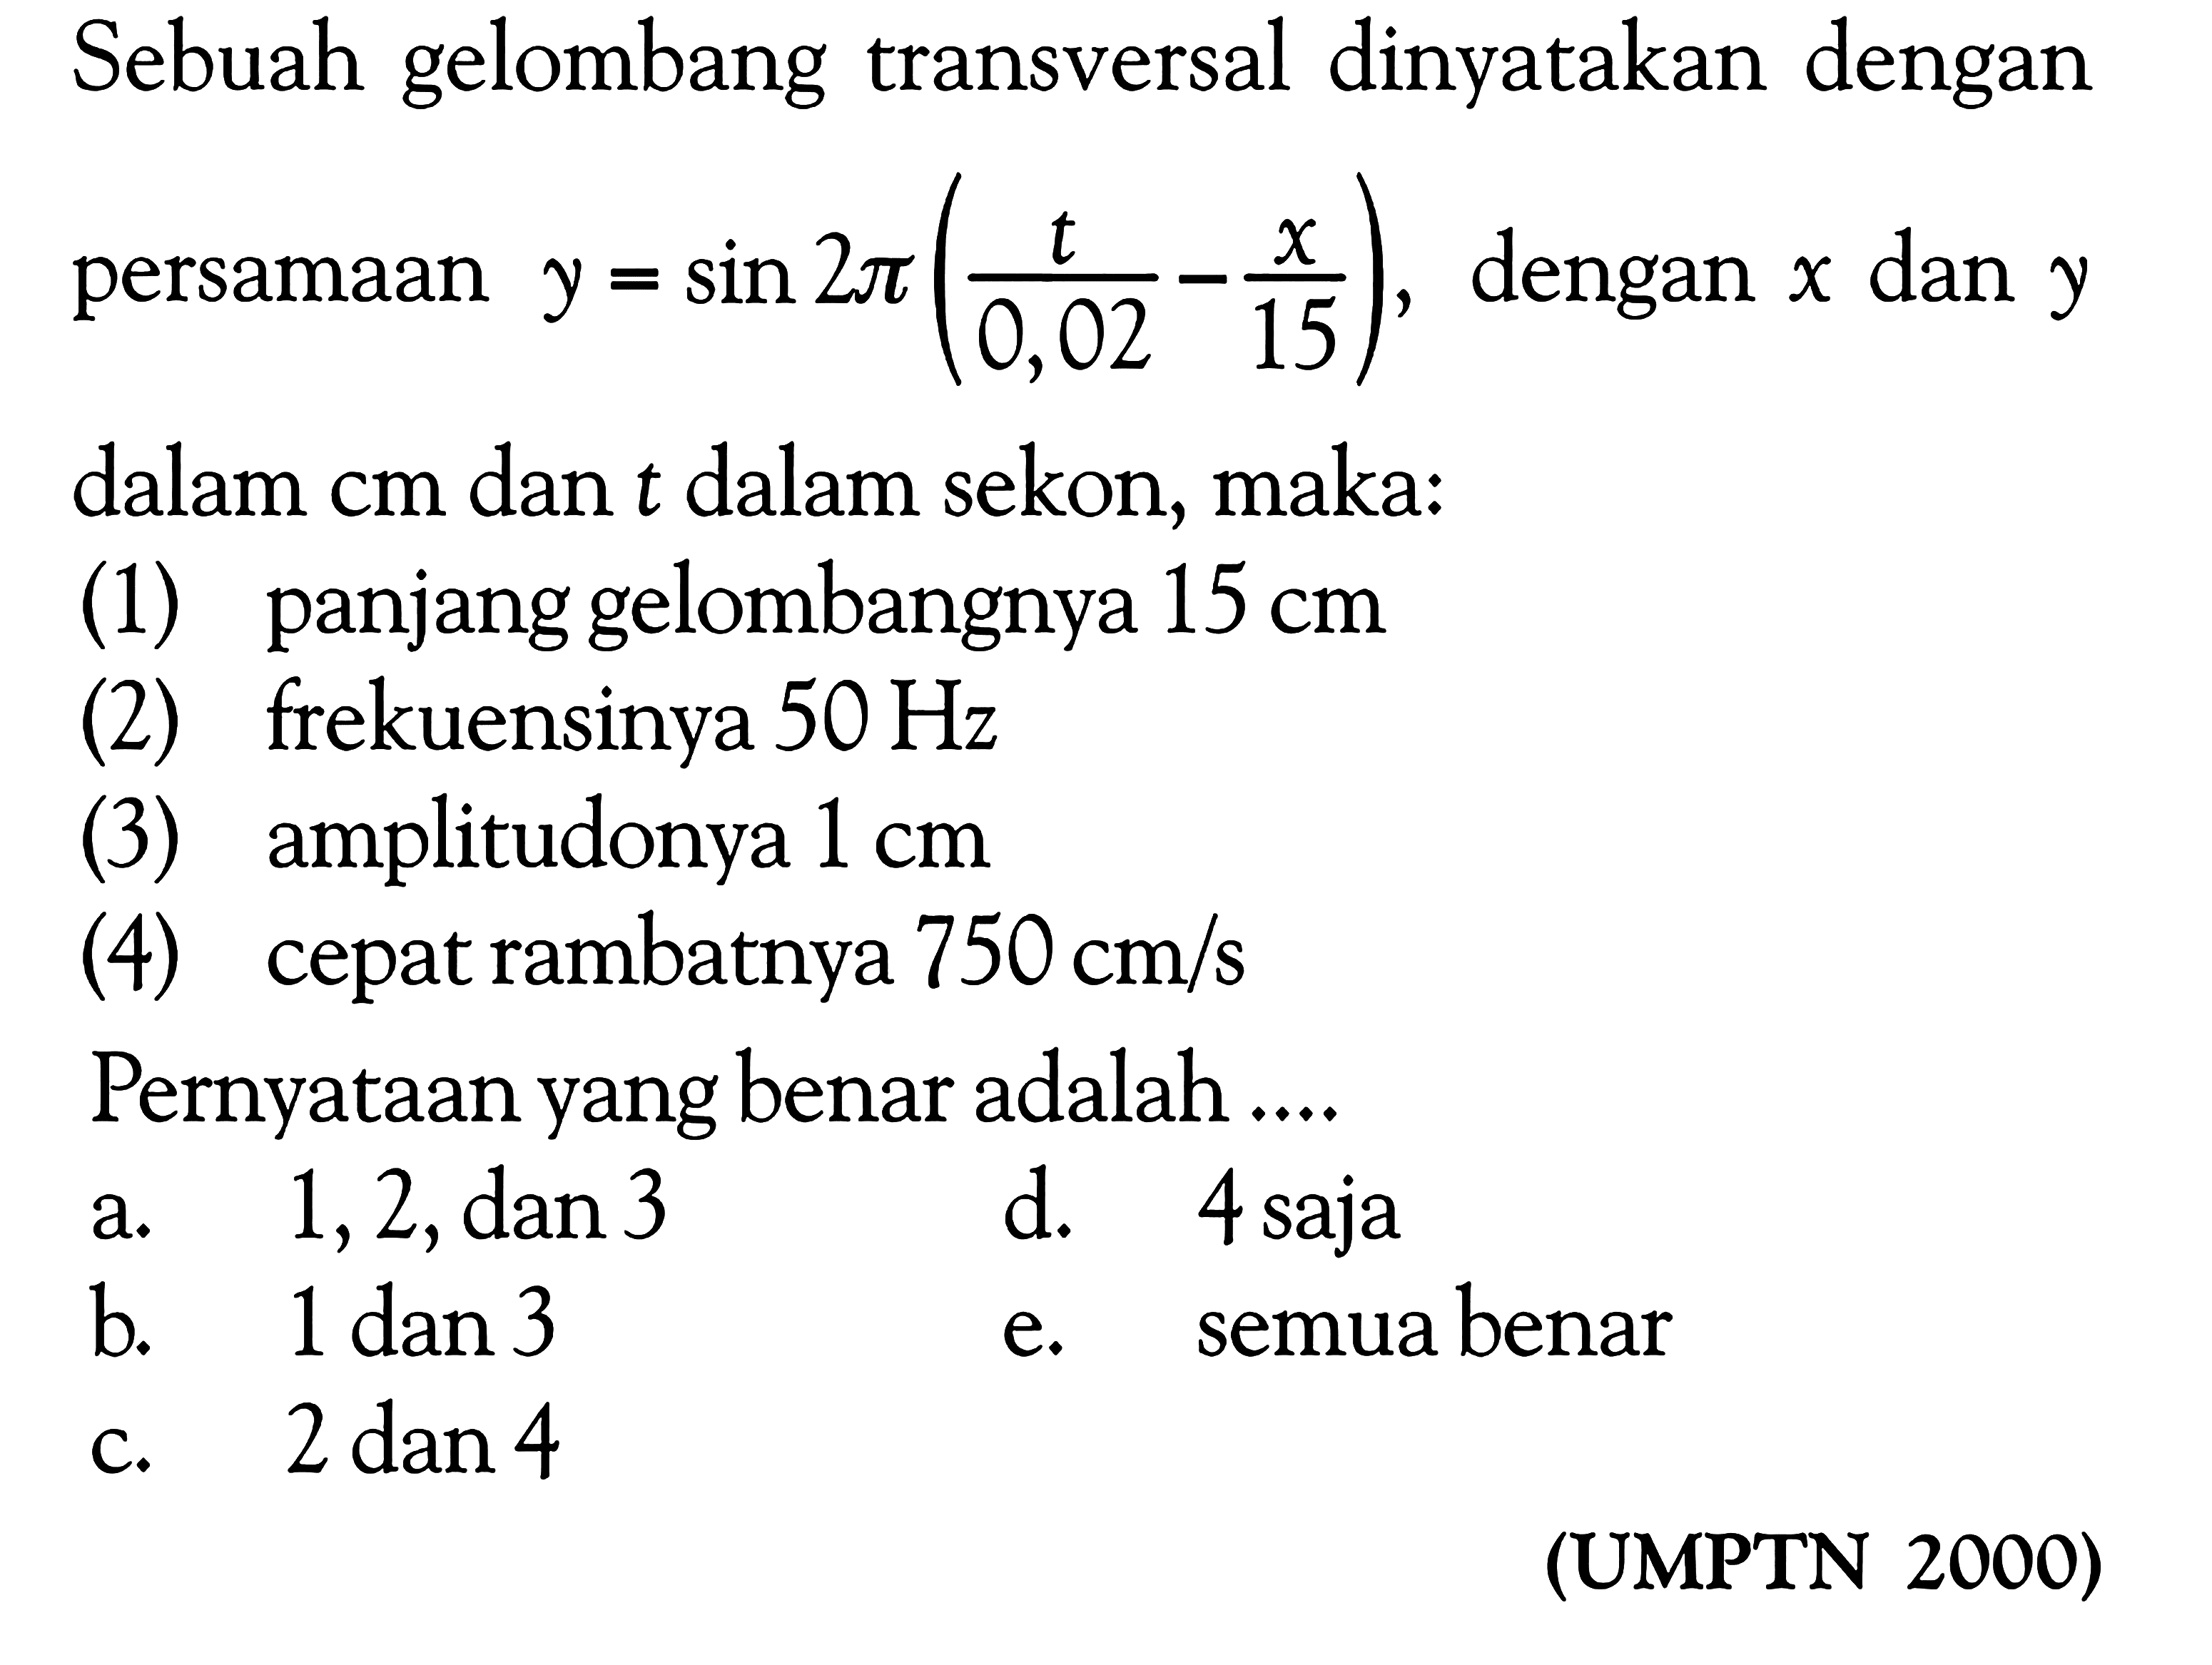 Sebuah gelombang transversal dinyatakan dengan persamaan  y=sin 2 pi(t/0,02-x/15) , dengan  x  dan  y  dalam  cm  dan  t  dalam sekon, maka:
(1) panjang gelombangnya  15 cm 
(2) frekuensinya  50 Hz 
(3) amplitudonya  1 cm 
(4) cepat rambatnya  750 cm / s 
Pernyataan yang benar adalah ....

(UMPTN 2000)